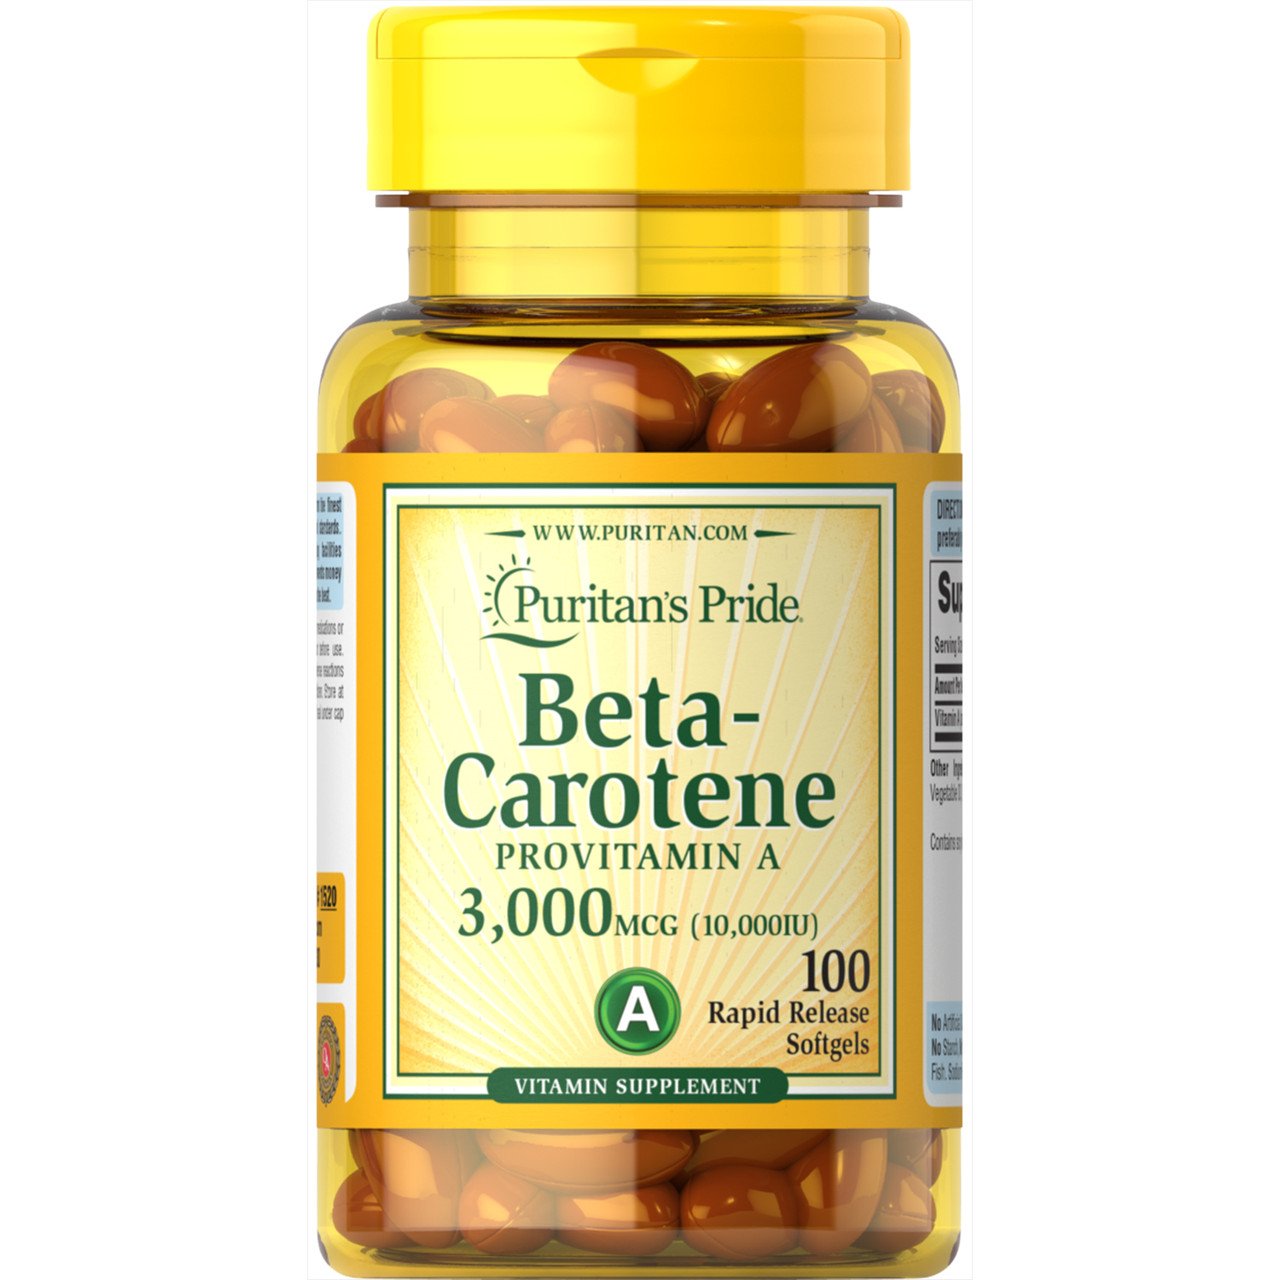 Бета-каротин Puritan's Pride Beta-Carotene Provitamin A 10000 IU 100 Softgels,  мл, Puritan's Pride. Витамины и минералы. Поддержание здоровья Укрепление иммунитета 